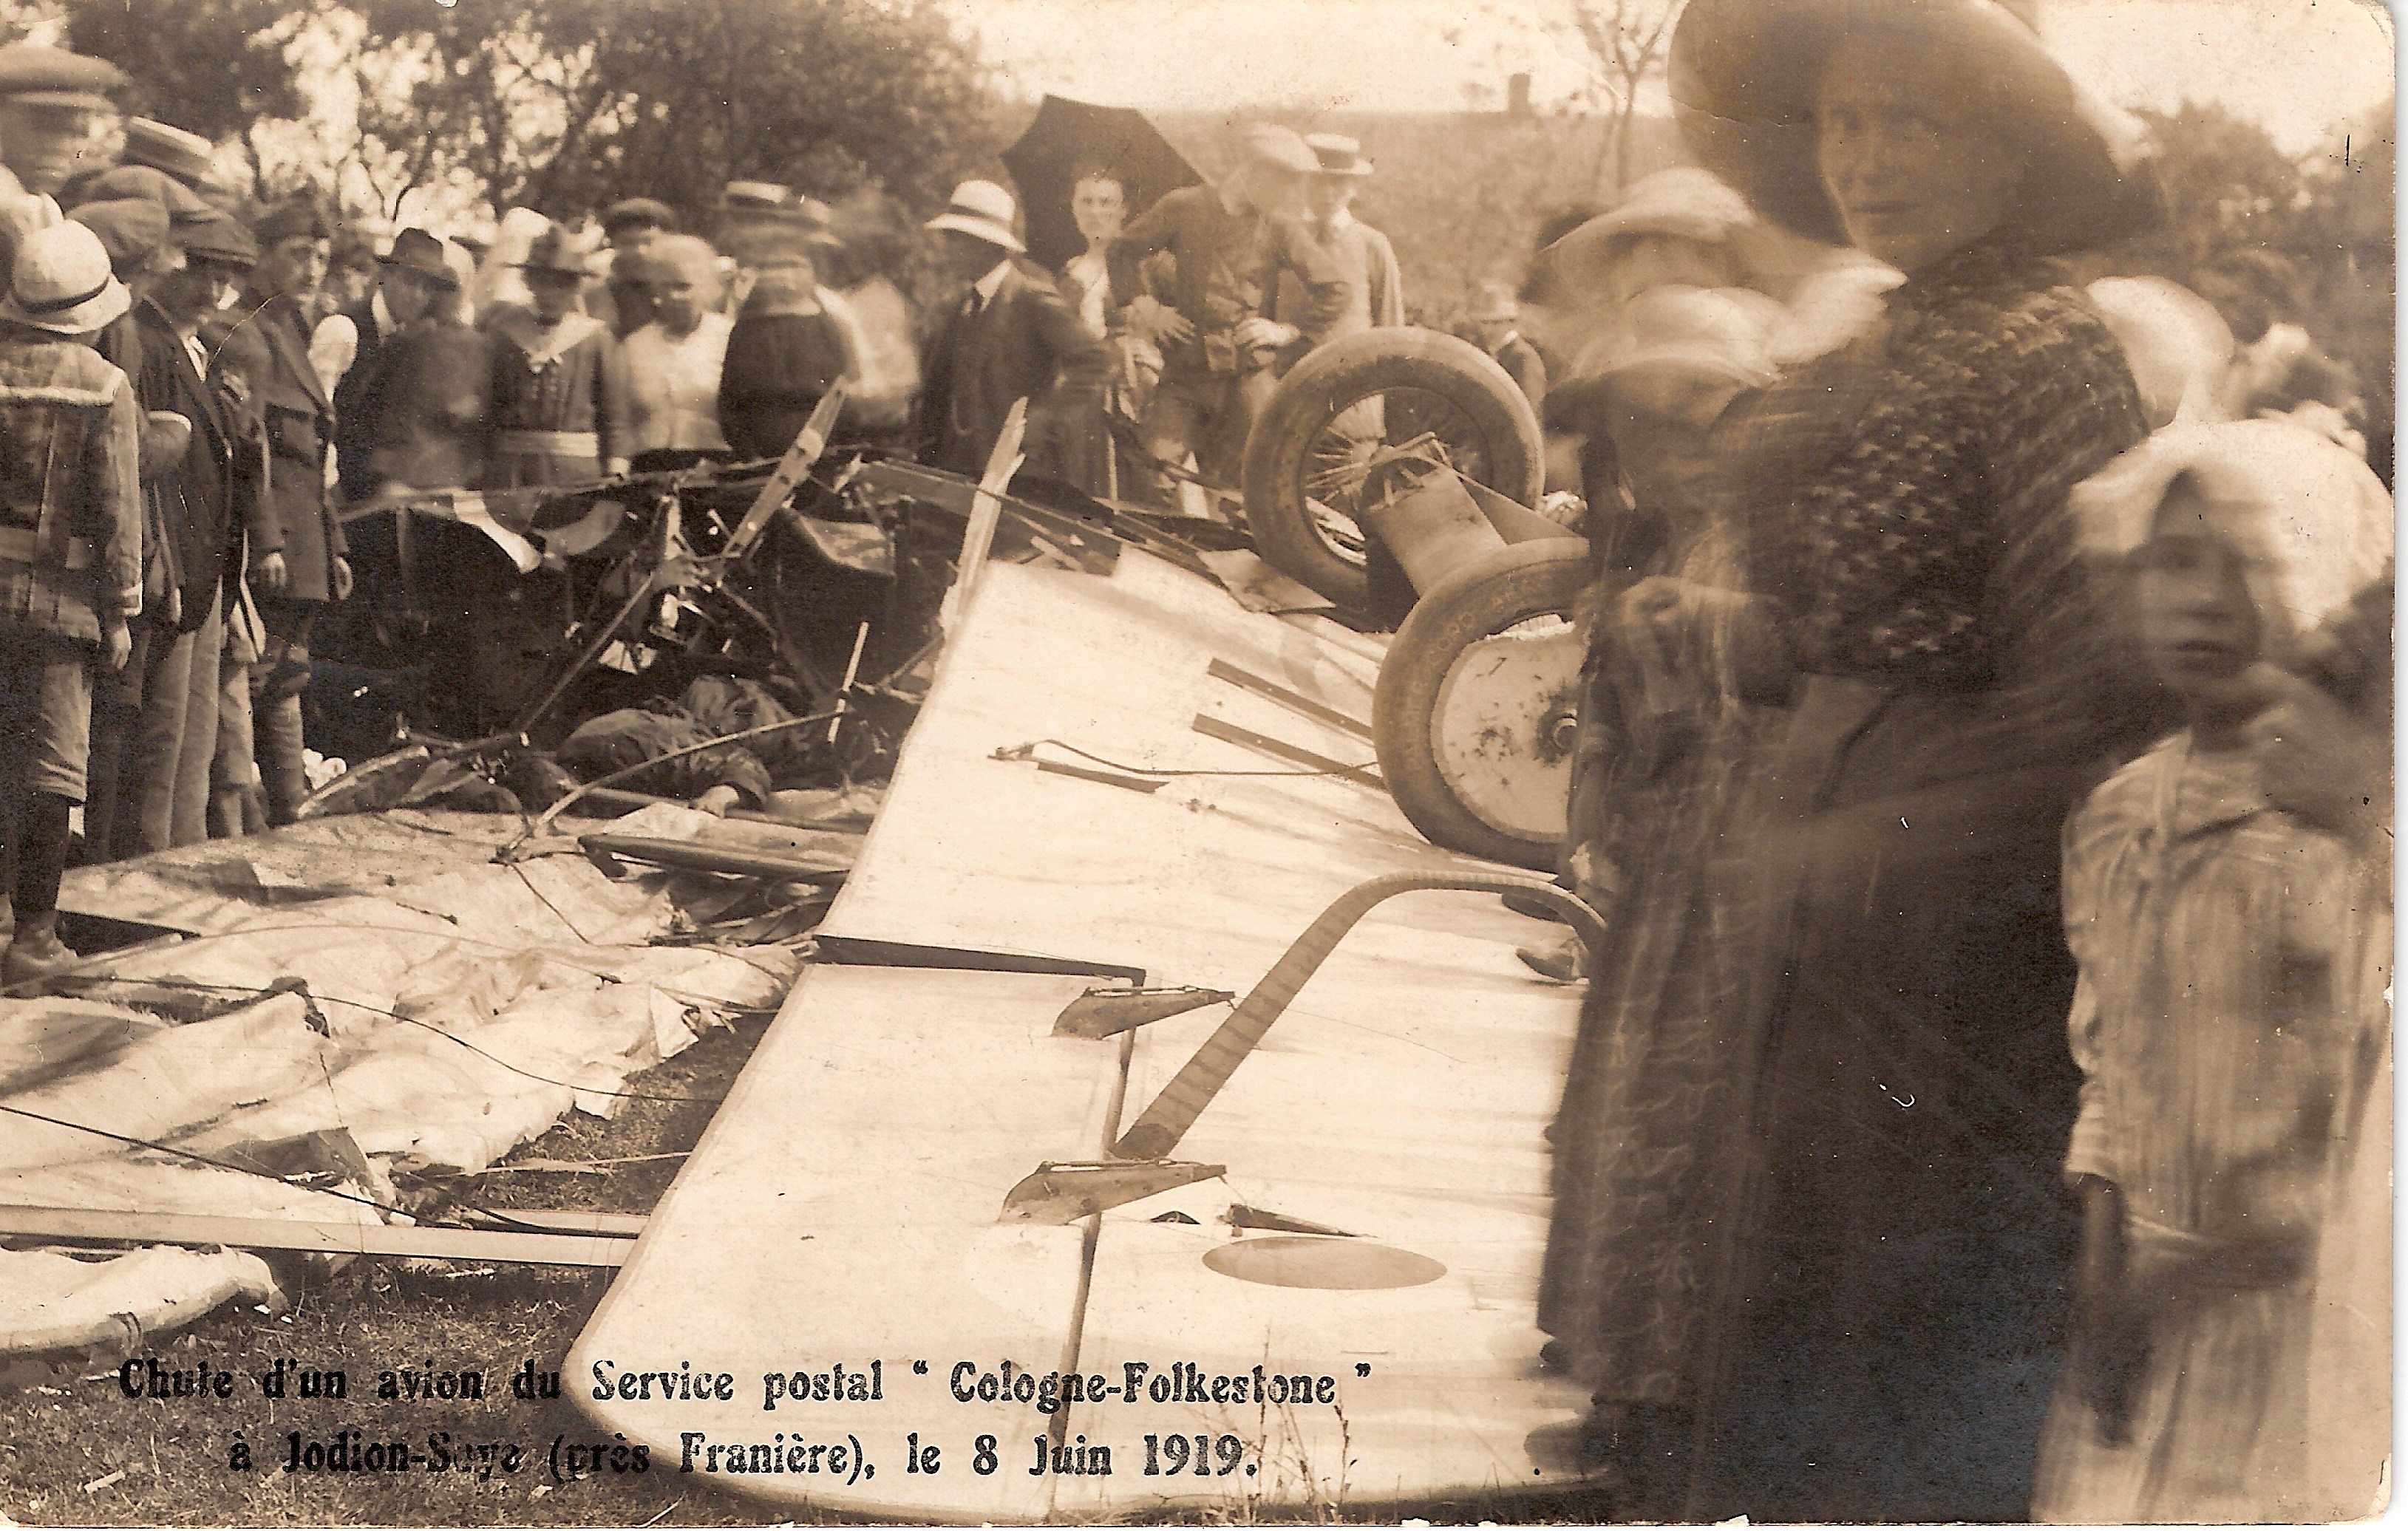 Chute d'un avion du service postal  Cologne - Folkestone  le 8 juin 1919